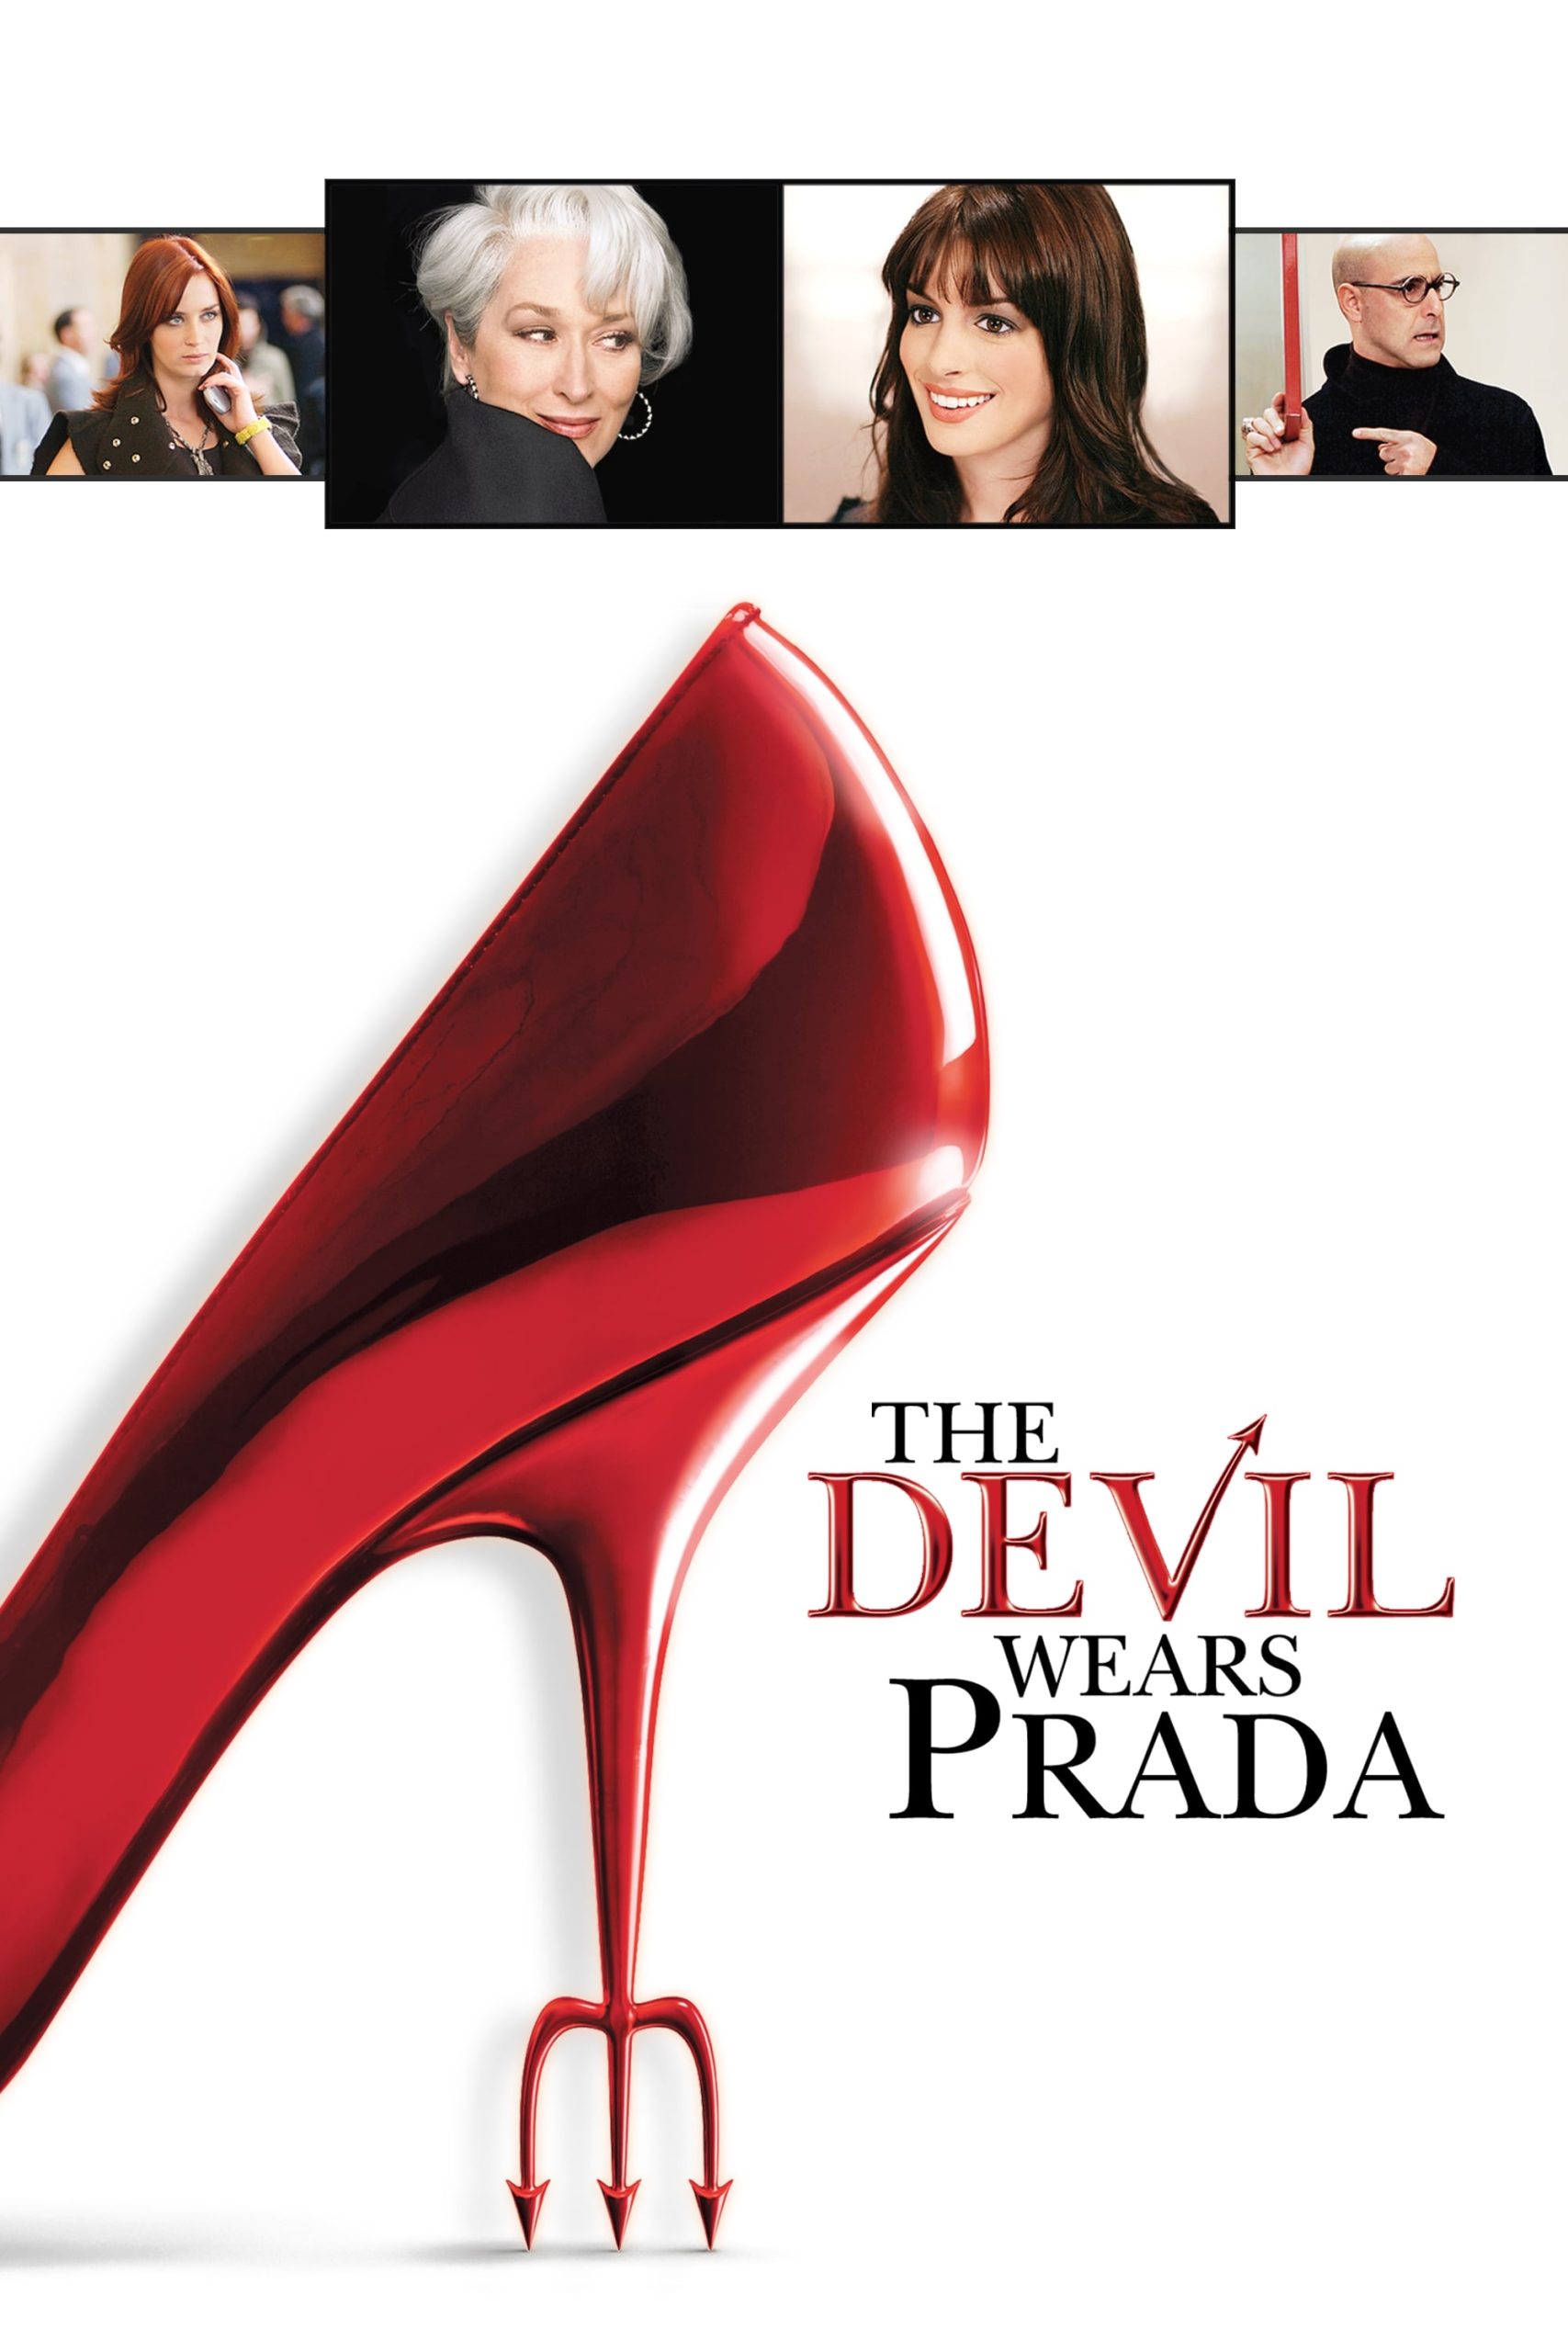 ดูหนังออนไลน์ฟรี The Devil Wears Prada นางมารสวมปราด้า